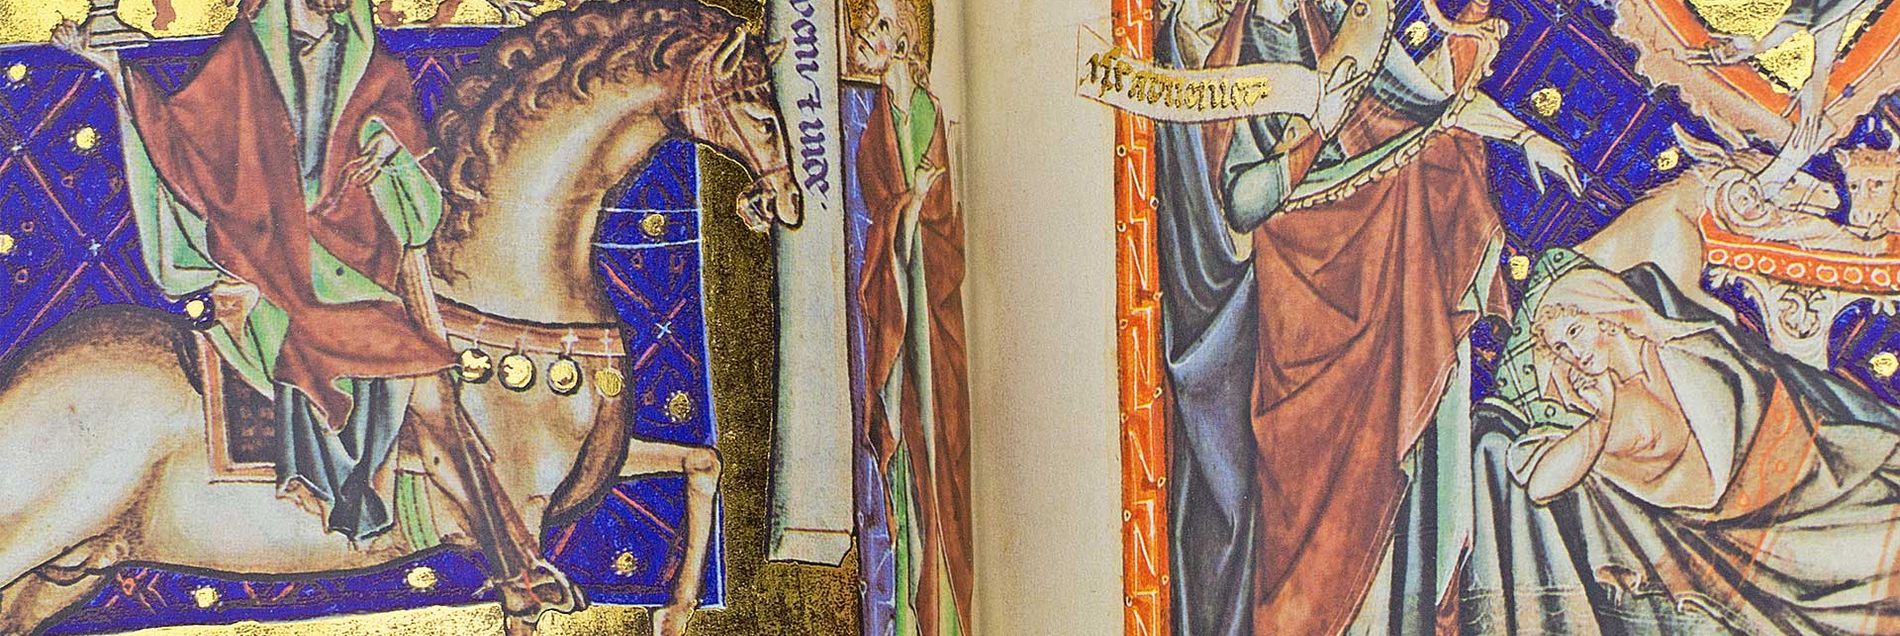 <i>“Eine der schönsten englischen Apokalypse-Handschriften der frühen Gotik”</i>